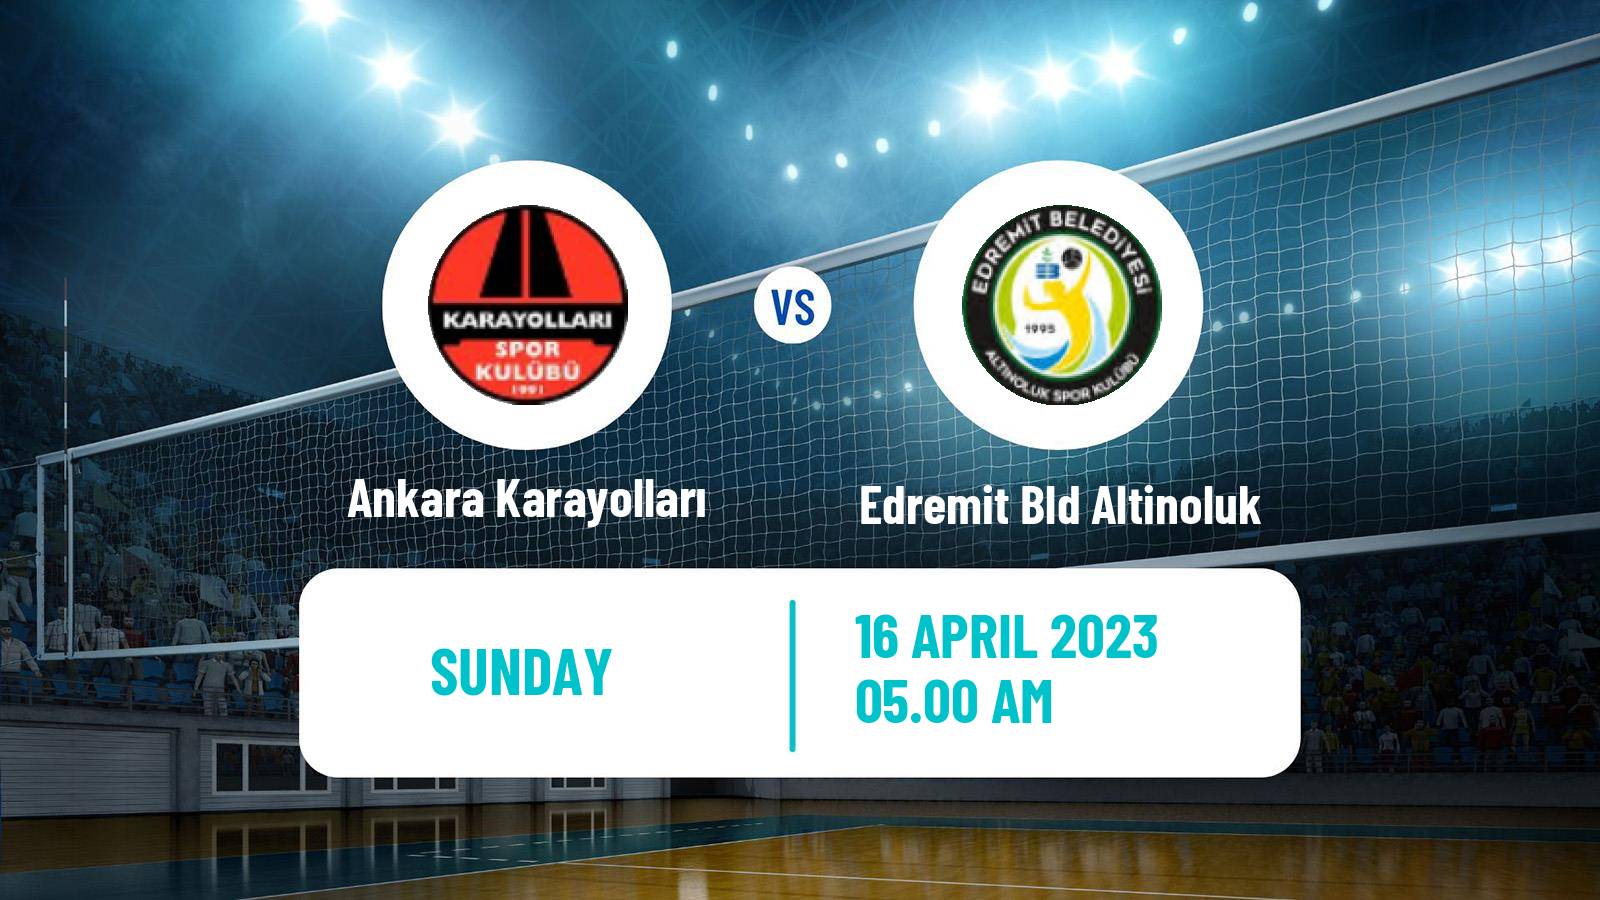 Volleyball Turkish 1 Ligi Volleyball Women Ankara Karayolları - Edremit Bld Altinoluk